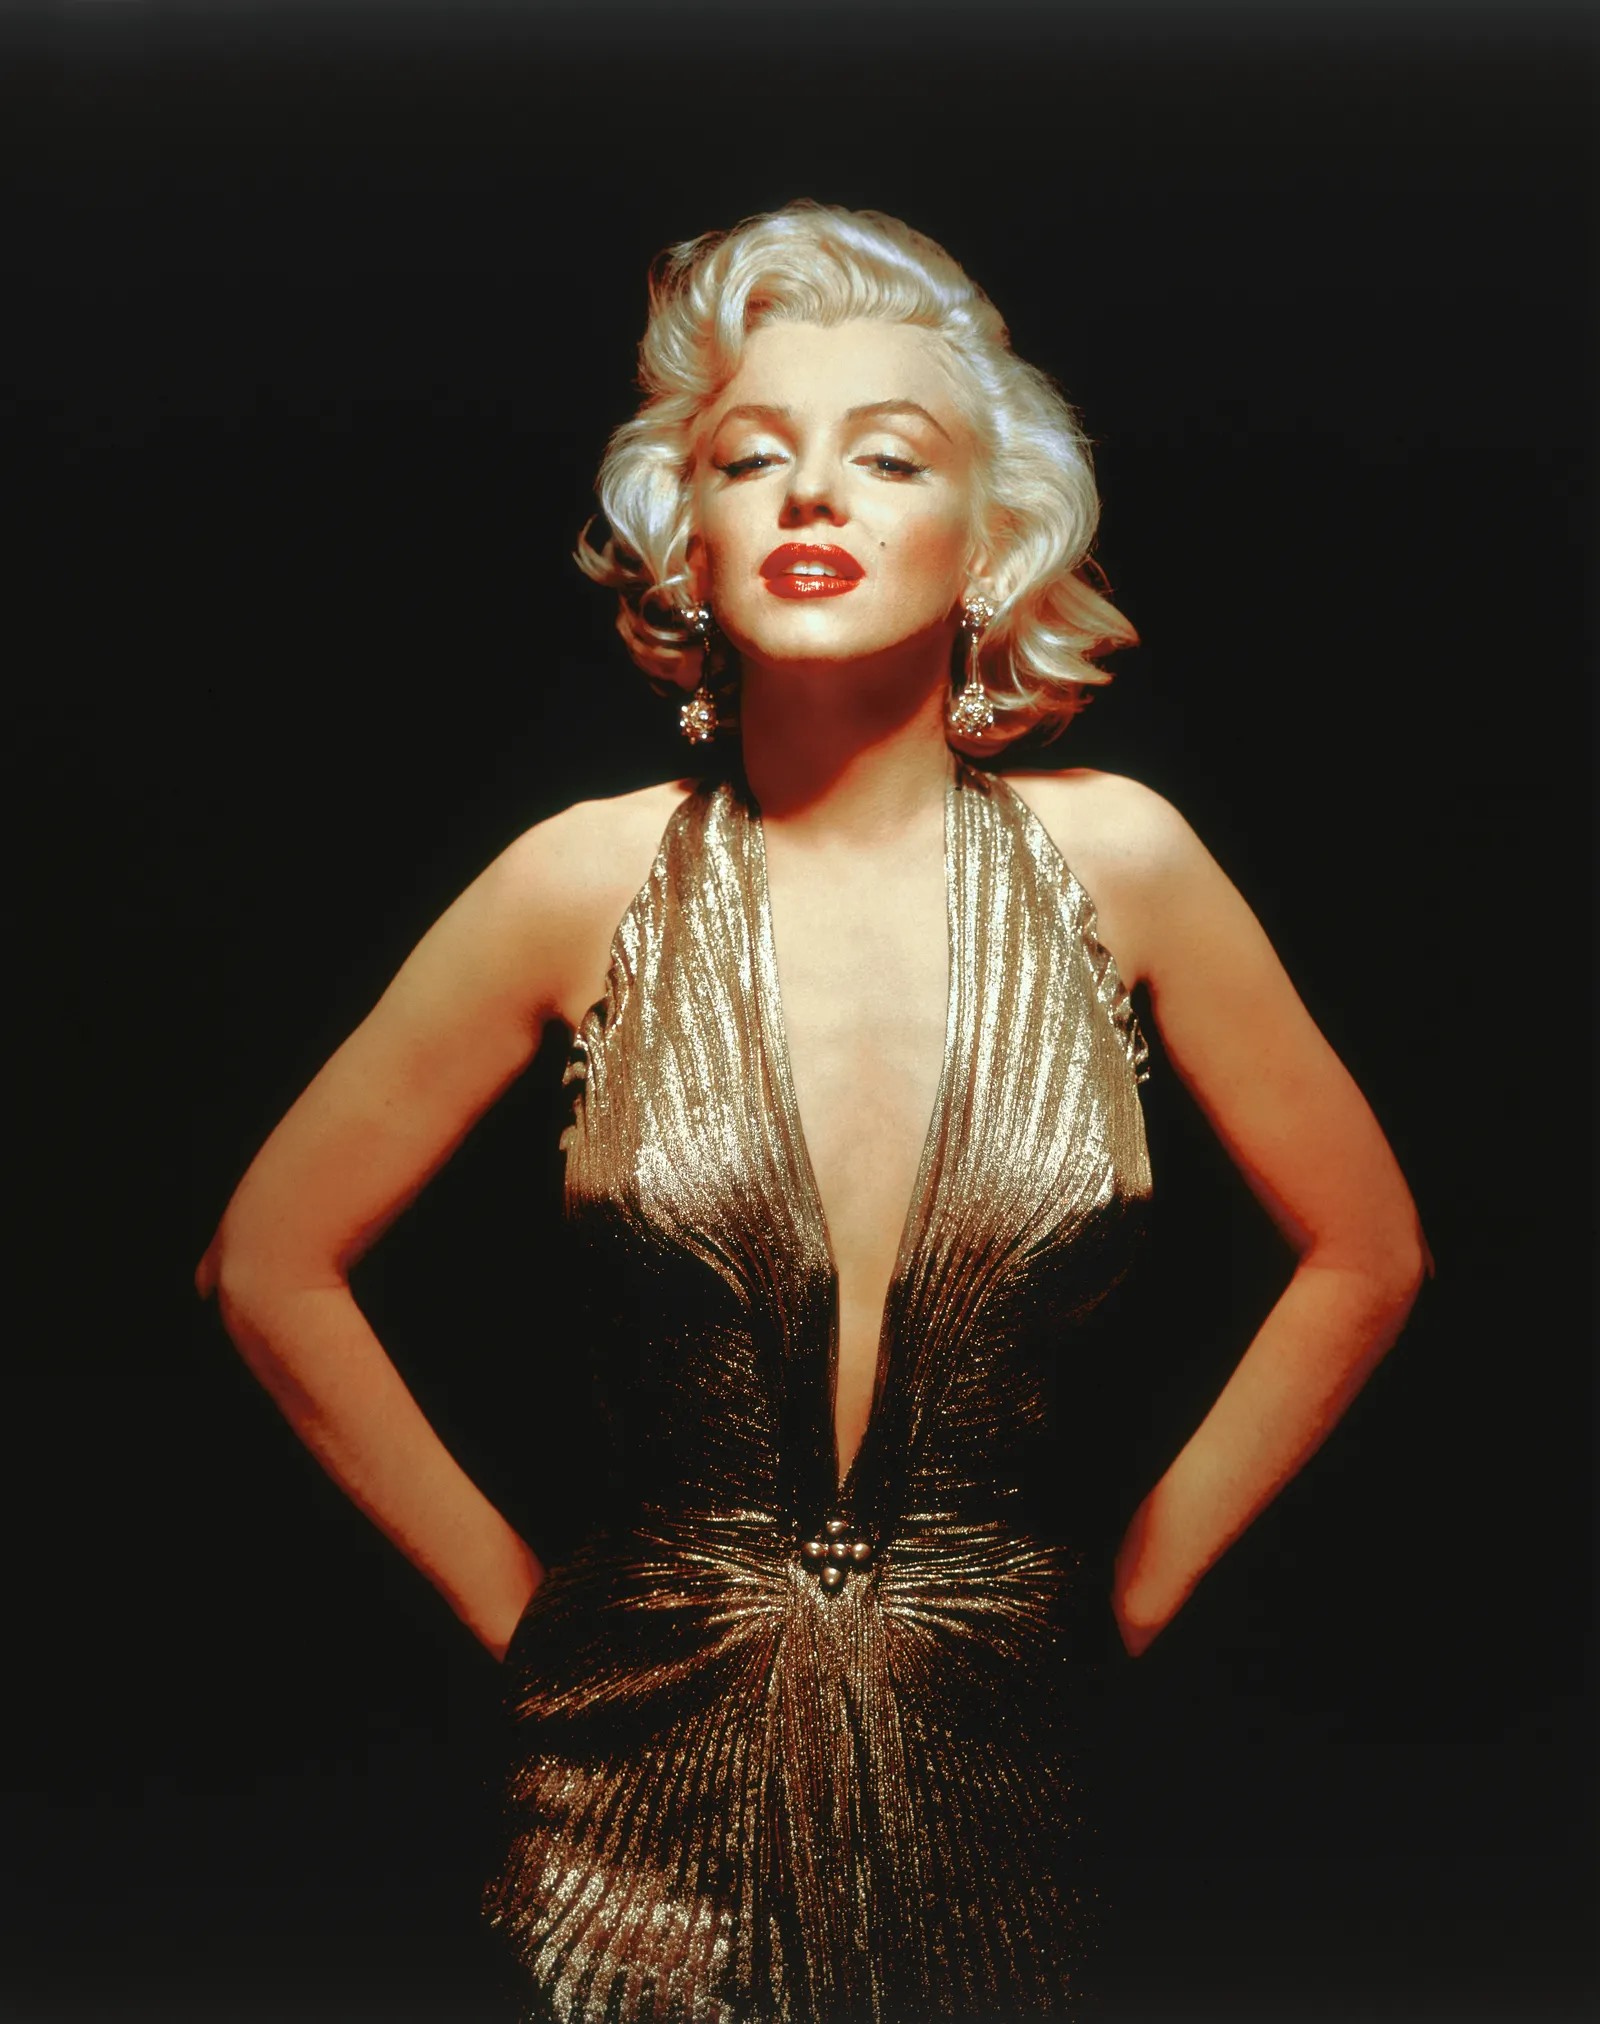 Trong “Gentlemen Prefer Blondes“, Marilyn Monroe diện bộ trang phục mang tính biểu tượng là chiếc váy vàng khoét sâu táo bạo. Dù chỉ lên hình vài giây, bộ váy vẫn được coi là một viên ngọc quý của nền điện ảnh lúc bấy giờ. Ảnh: TCF.